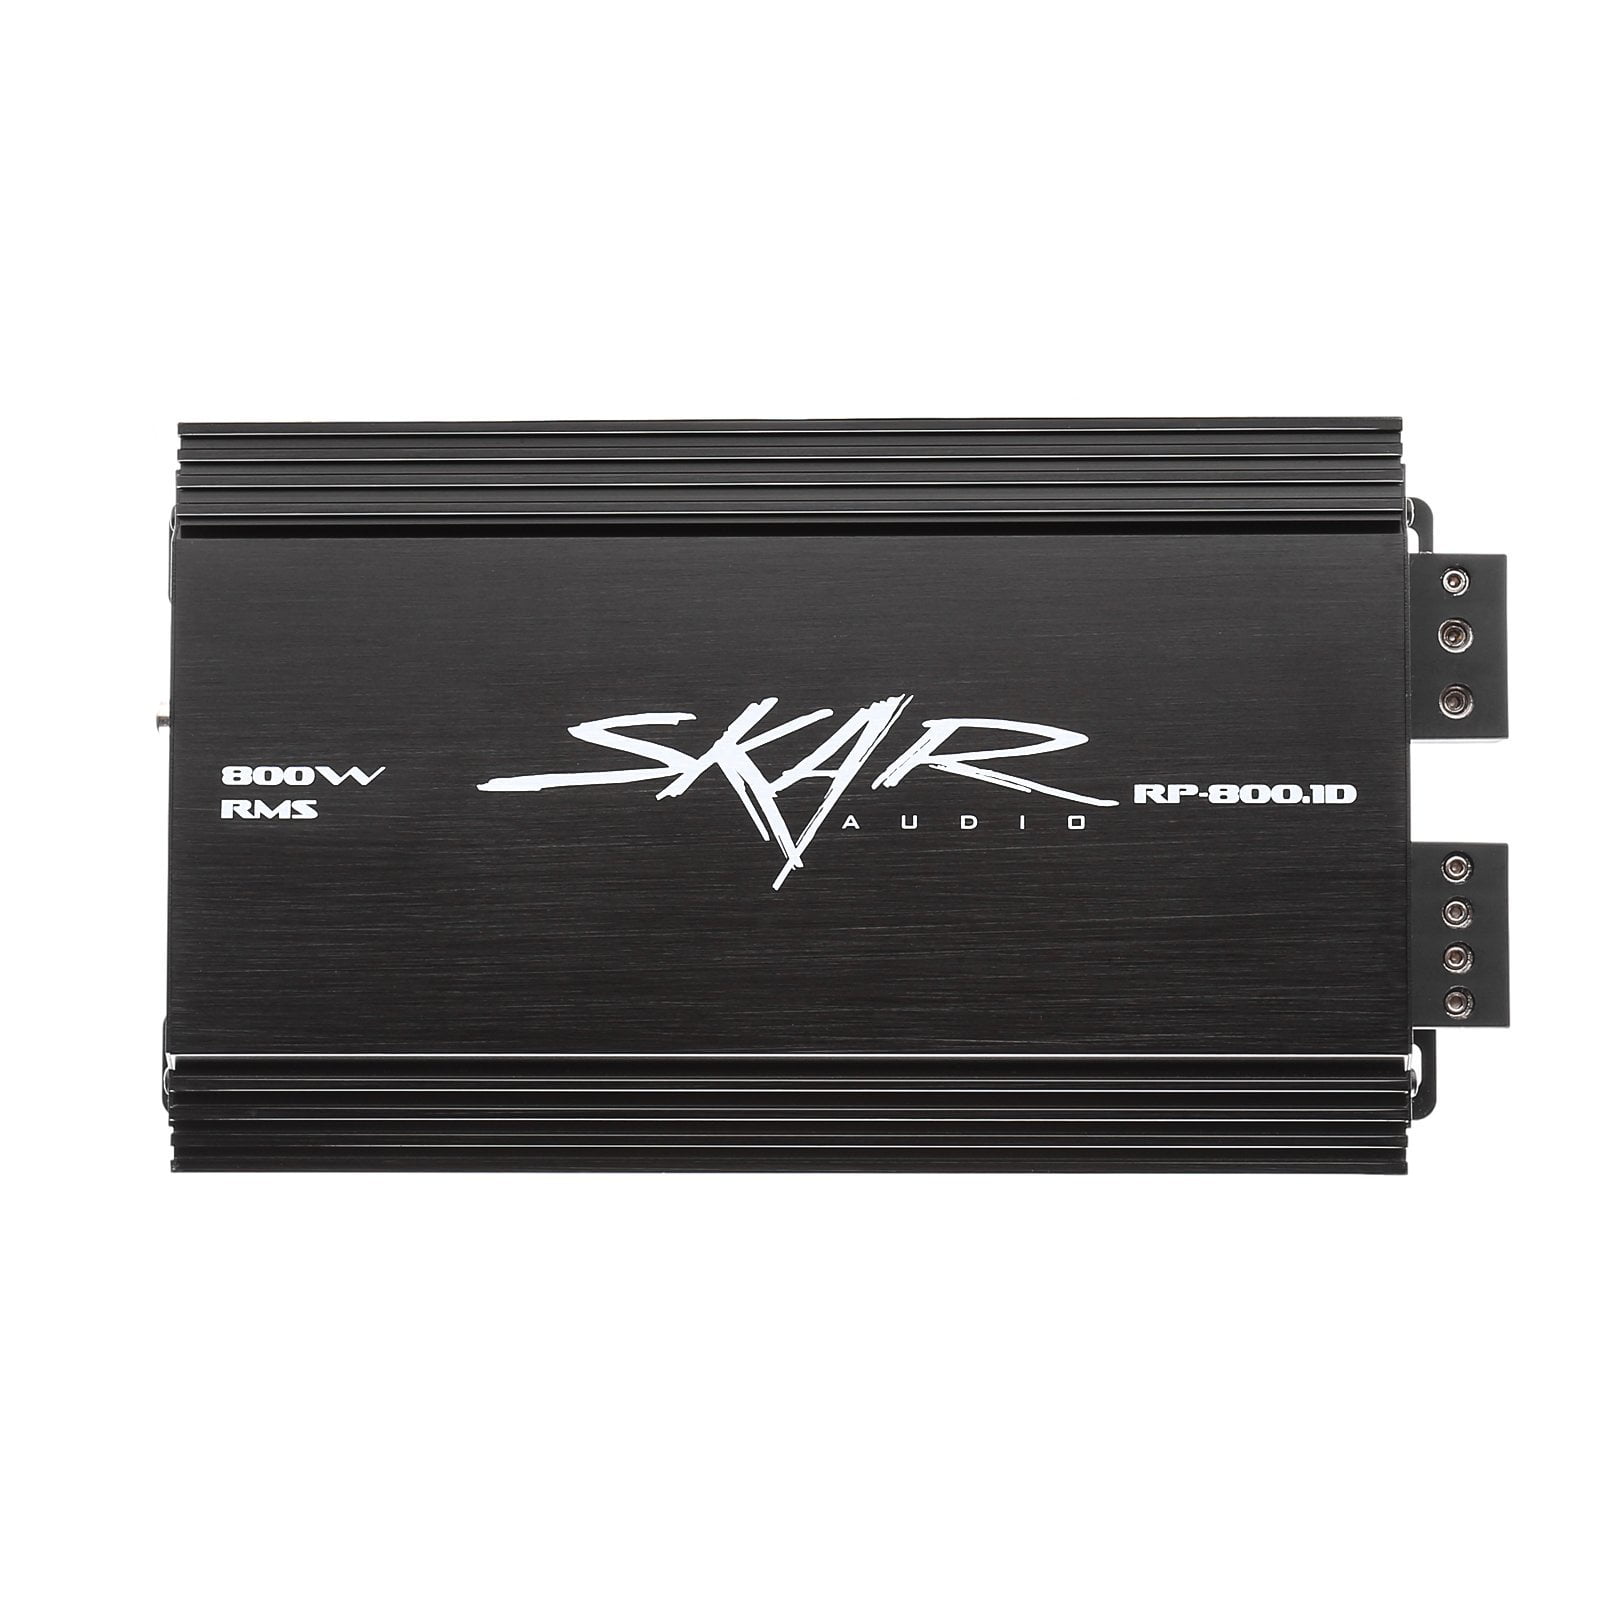 Skar Audio RP-800.1D 800 Watt Class D Monoblock Car Amplifier - Front View